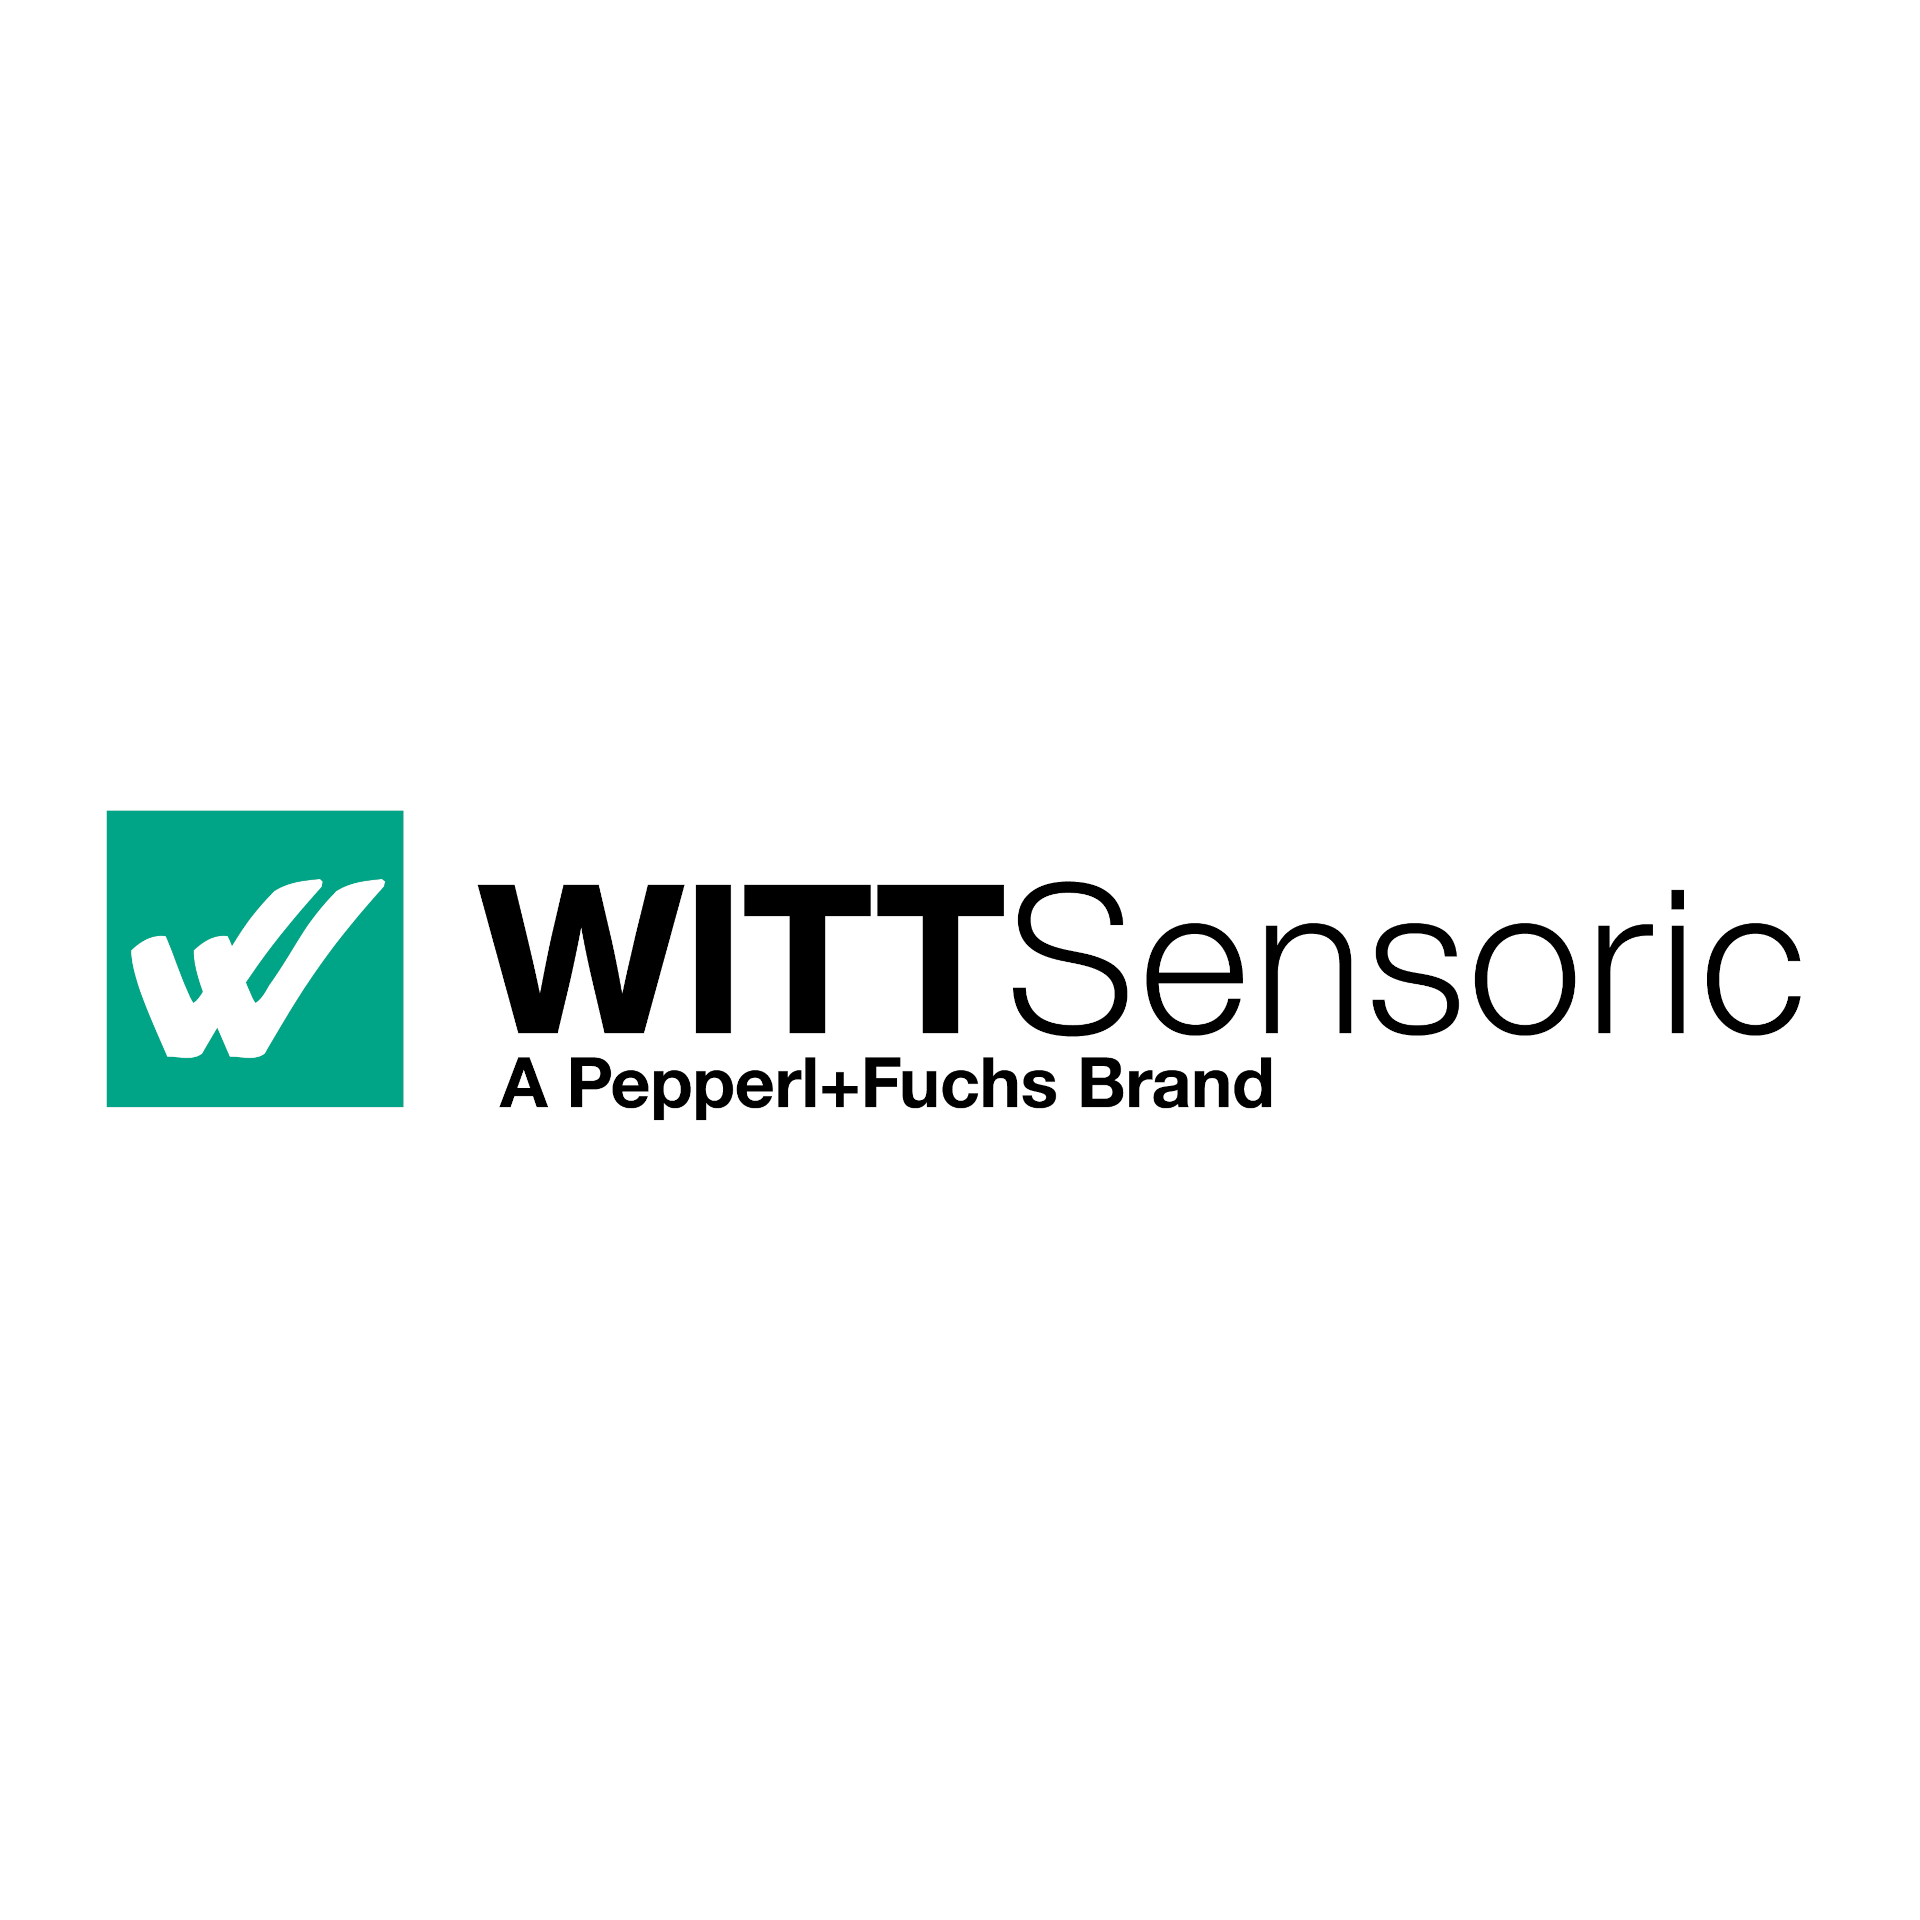 WITT Sensoric – Die Pepperl+Fuchs Marke für die Torautomation